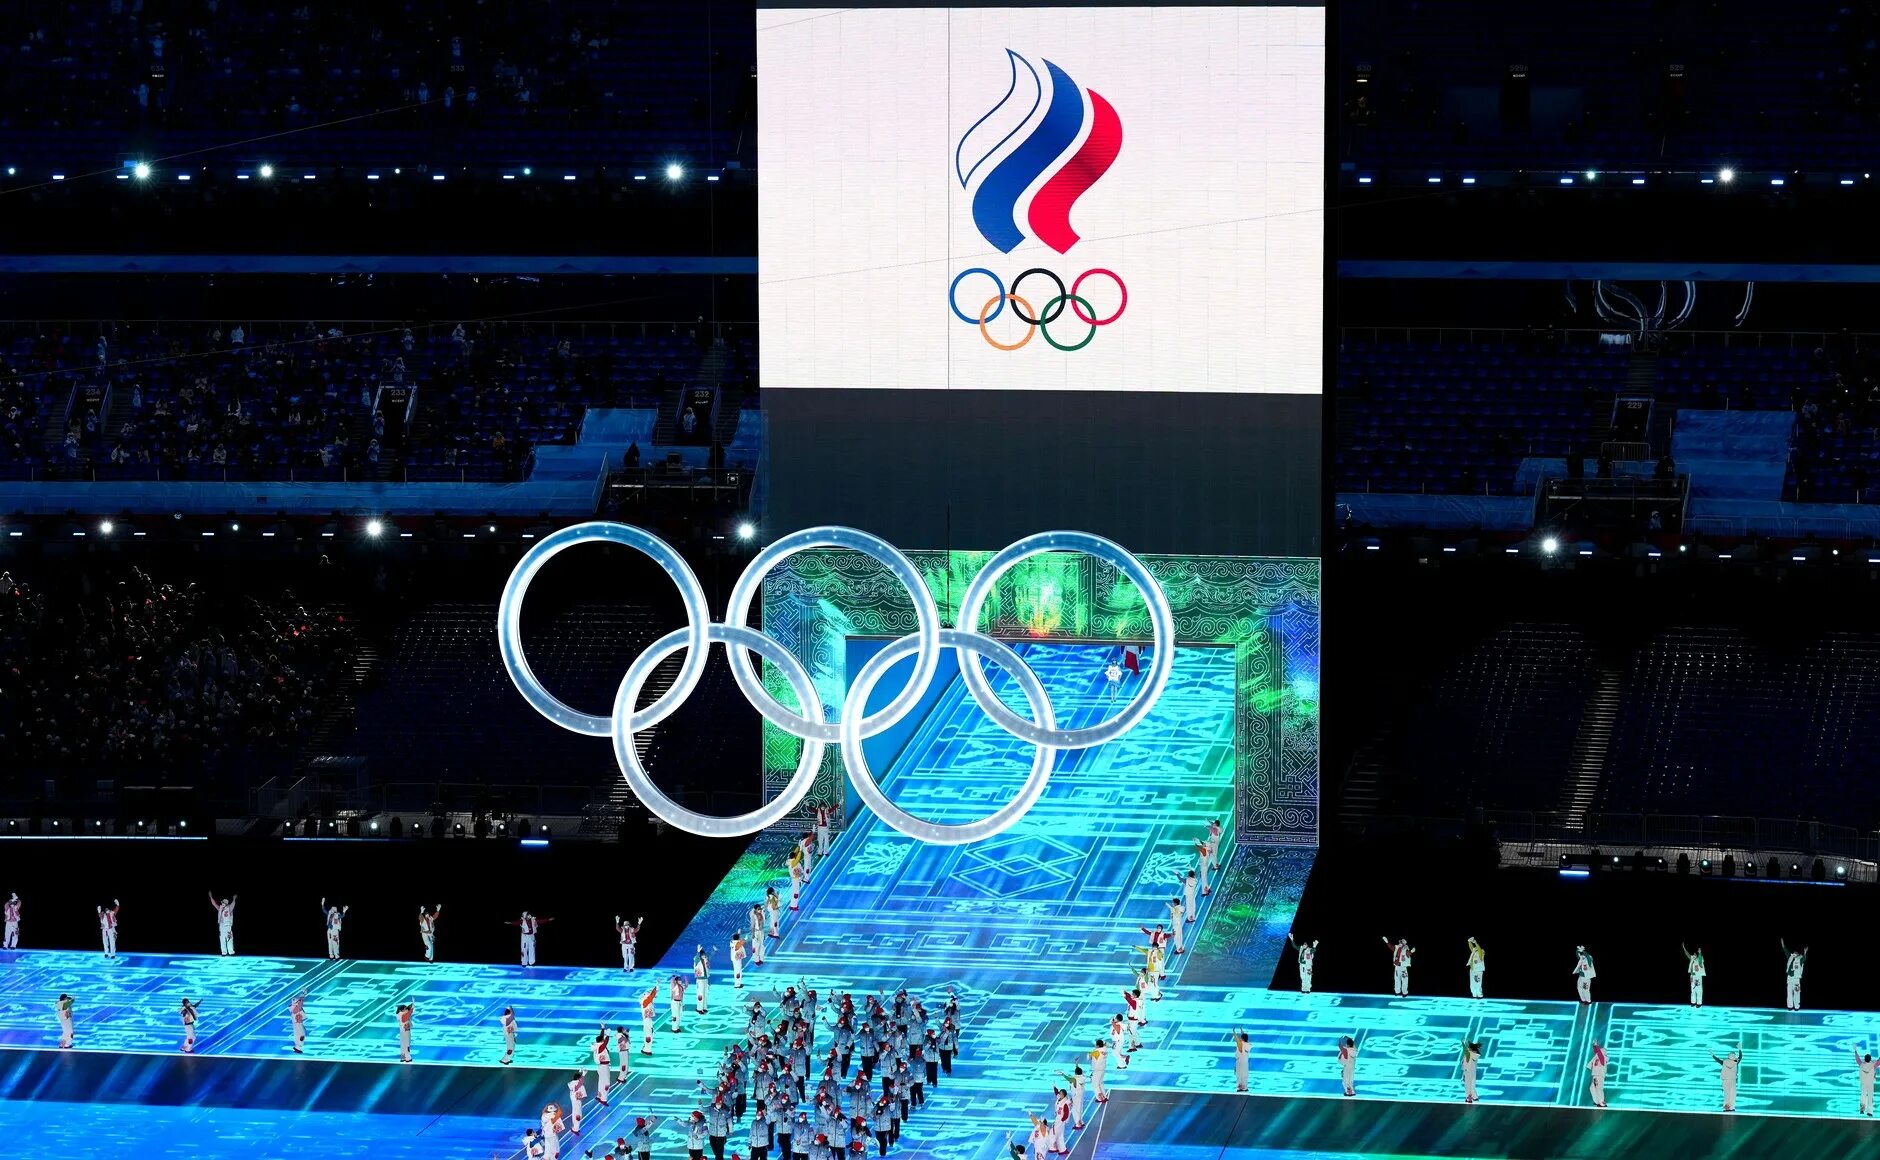 Олимпийские игры россия места